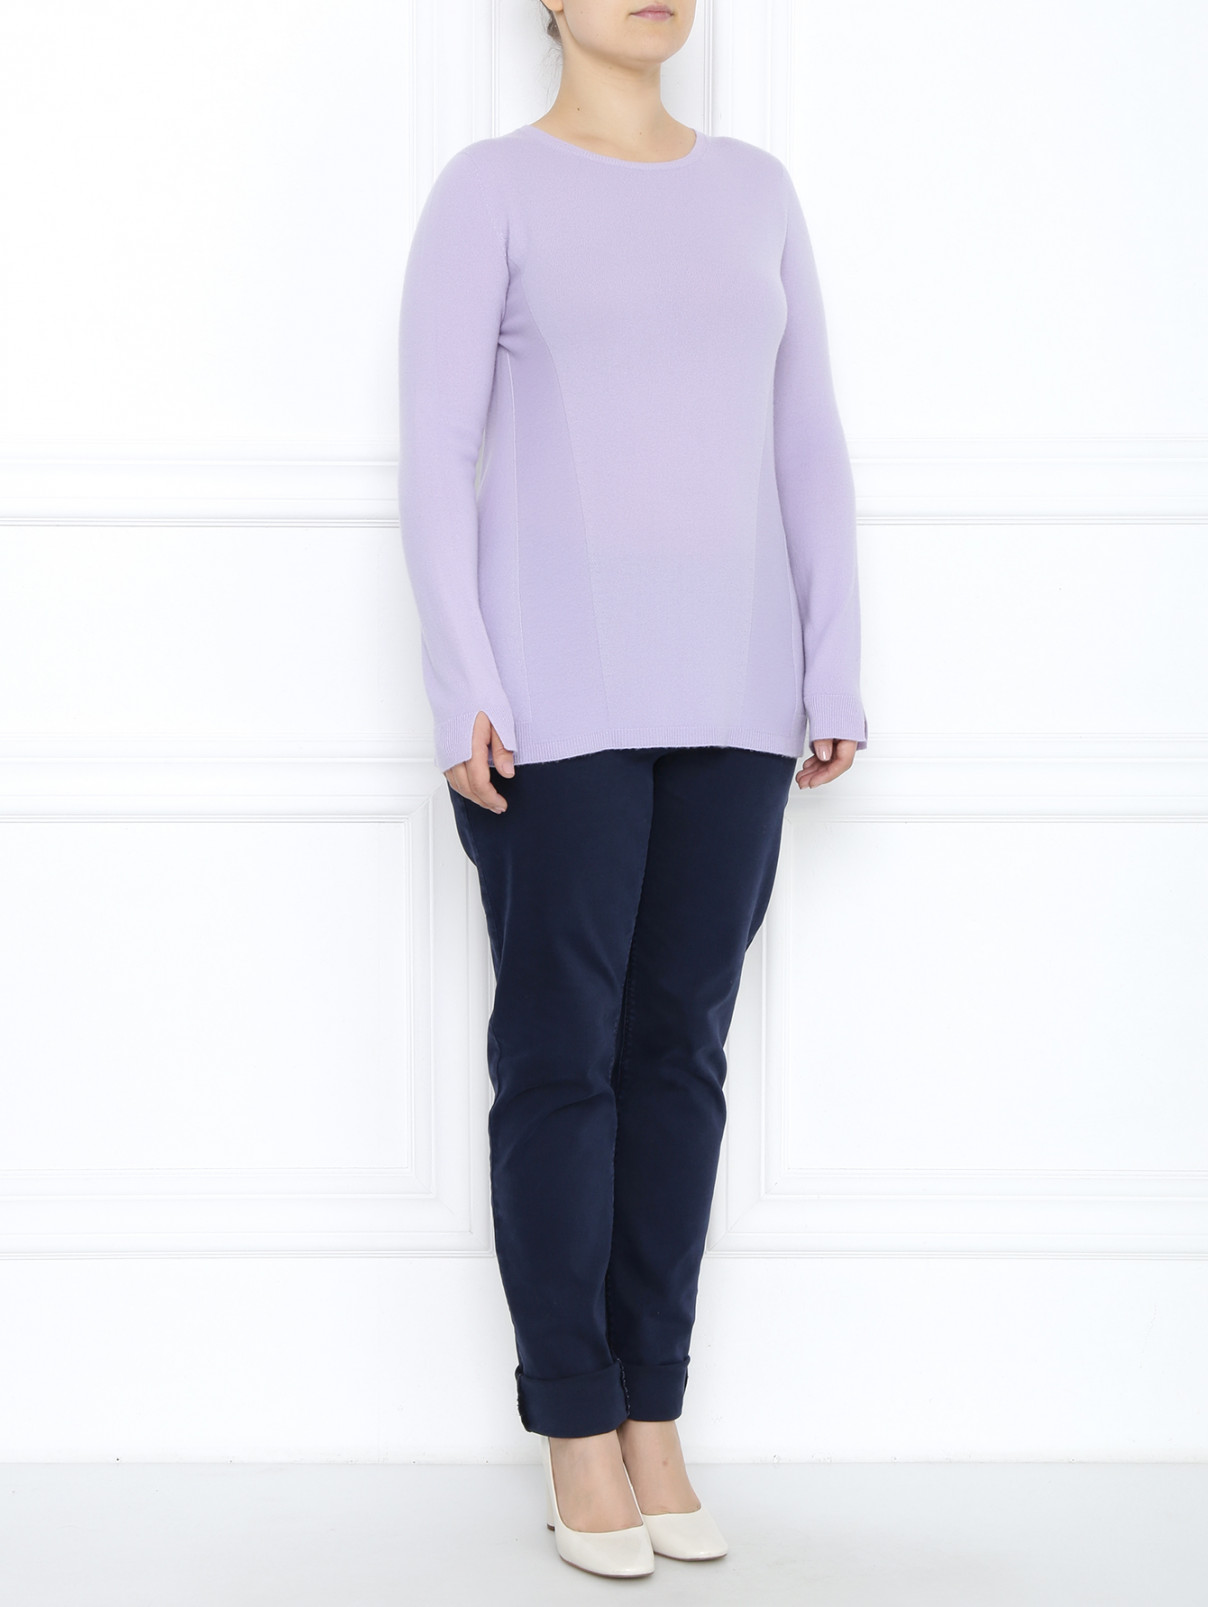 Джемпер из кашемира с длинным рукавом Voyage by Marina Rinaldi  –  Модель Общий вид  – Цвет:  Фиолетовый